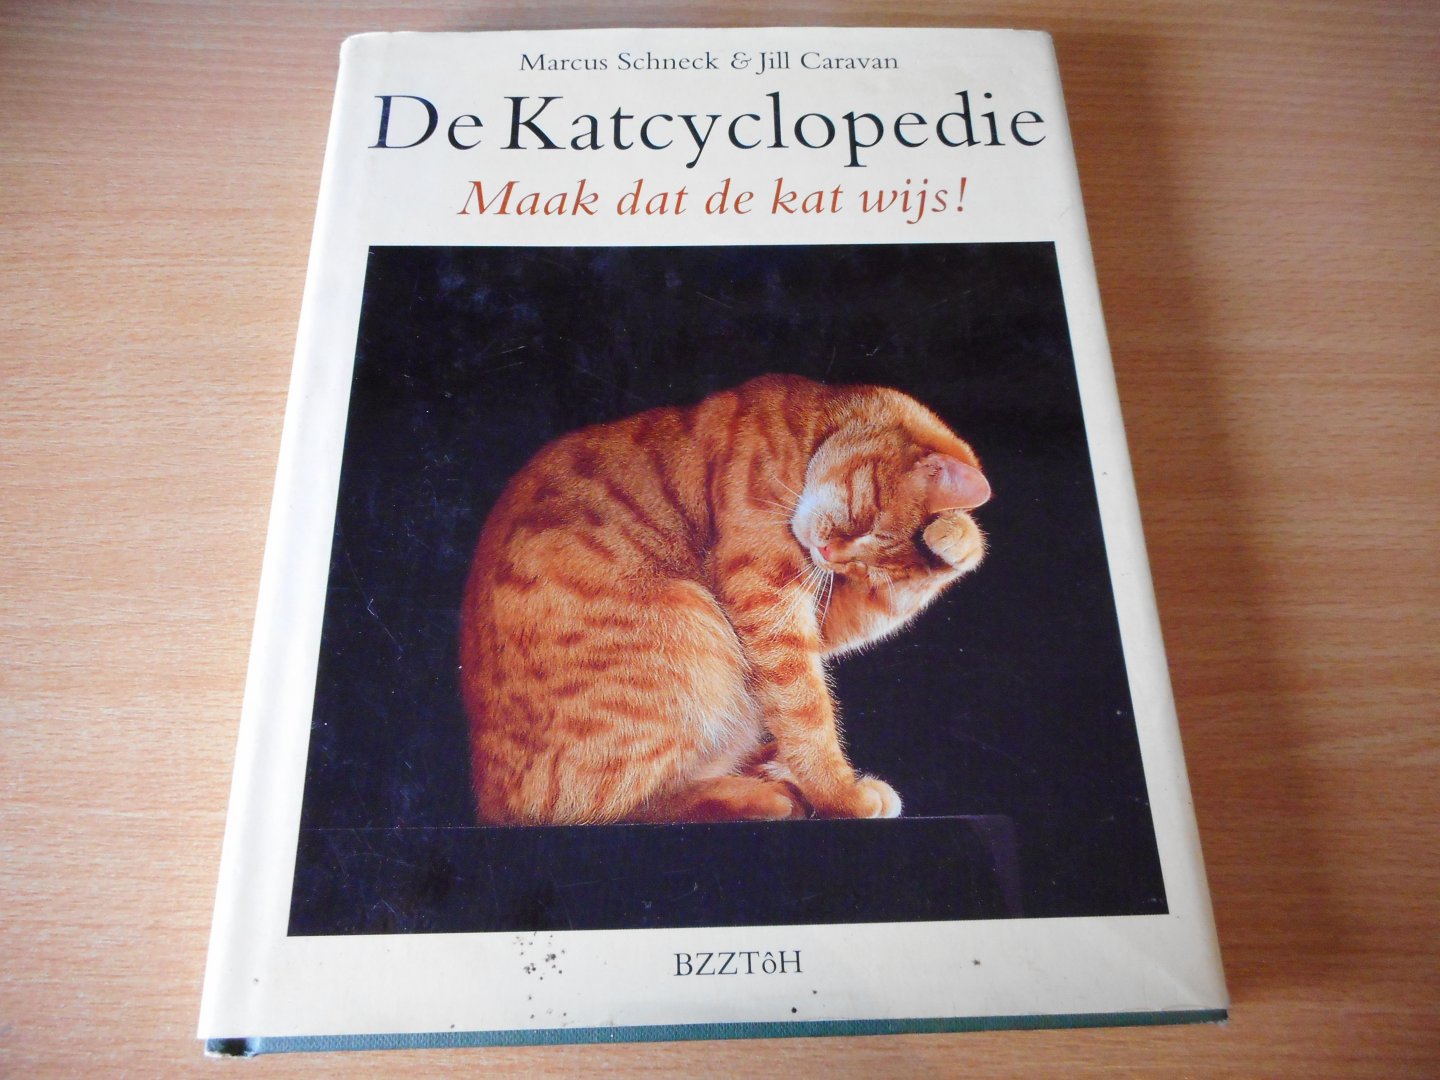 Schneck, Marcus & Jill Caravan - De Katencyclopedie. Maak dat de kat wijs!